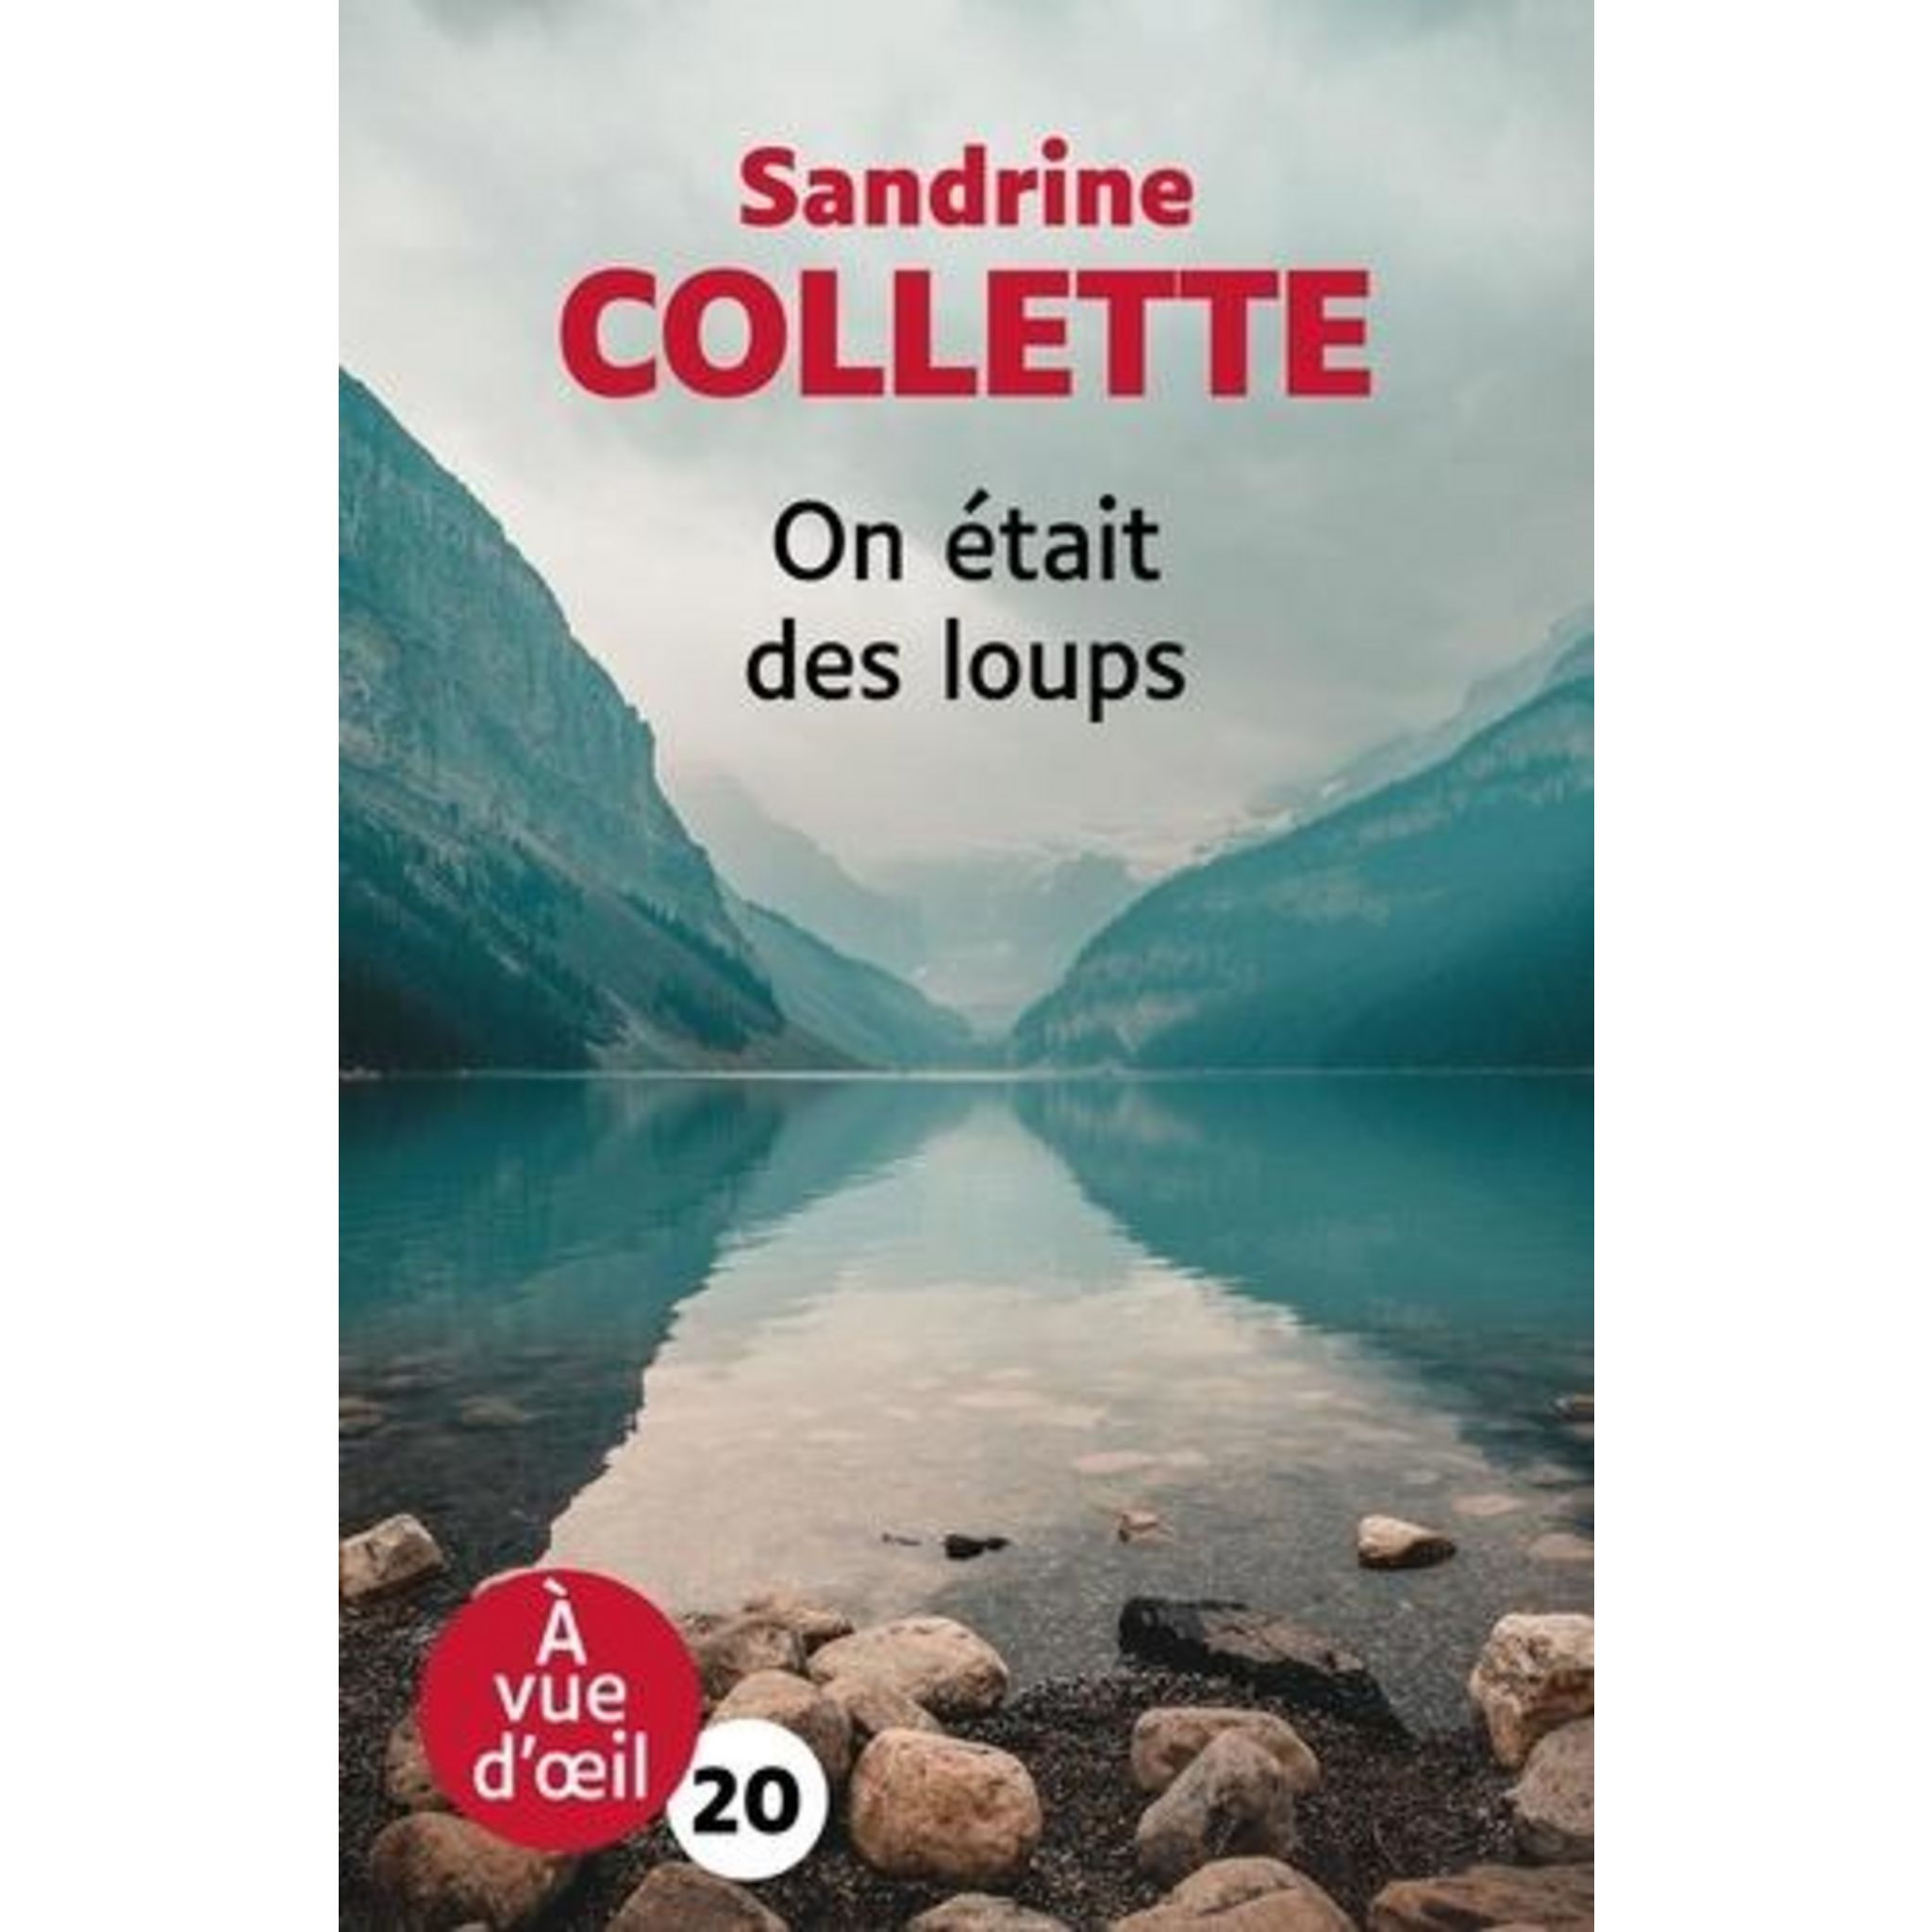 ON ETAIT DES LOUPS [EDITION EN GROS CARACTERES], Collette Sandrine